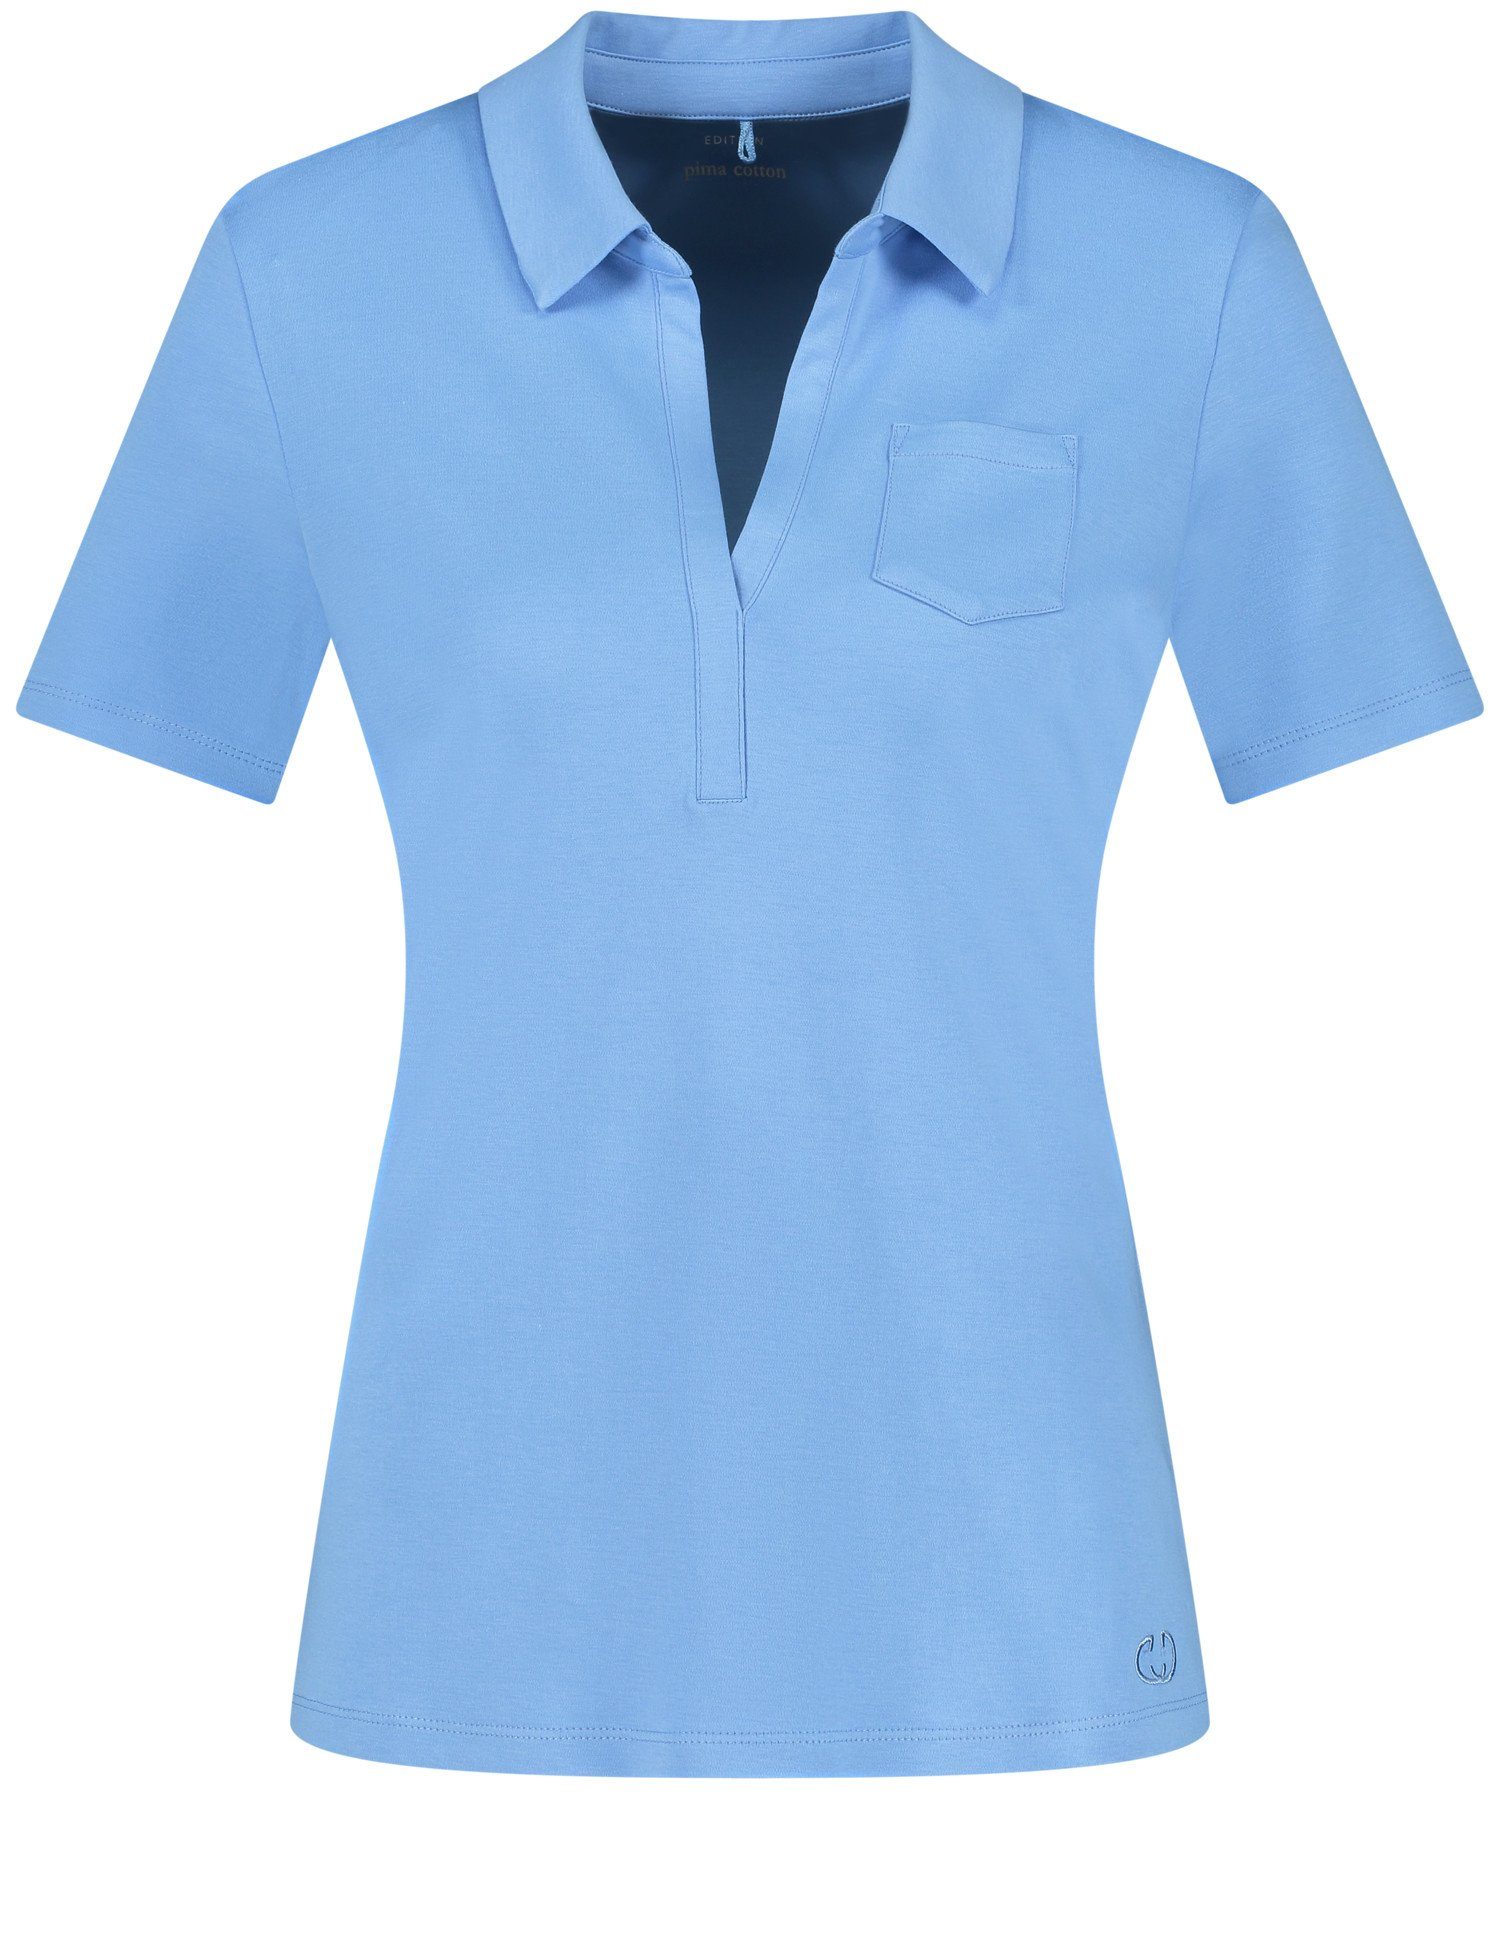 Poloshirt Bright Blue Poloshirt WEBER Kurzarm GERRY